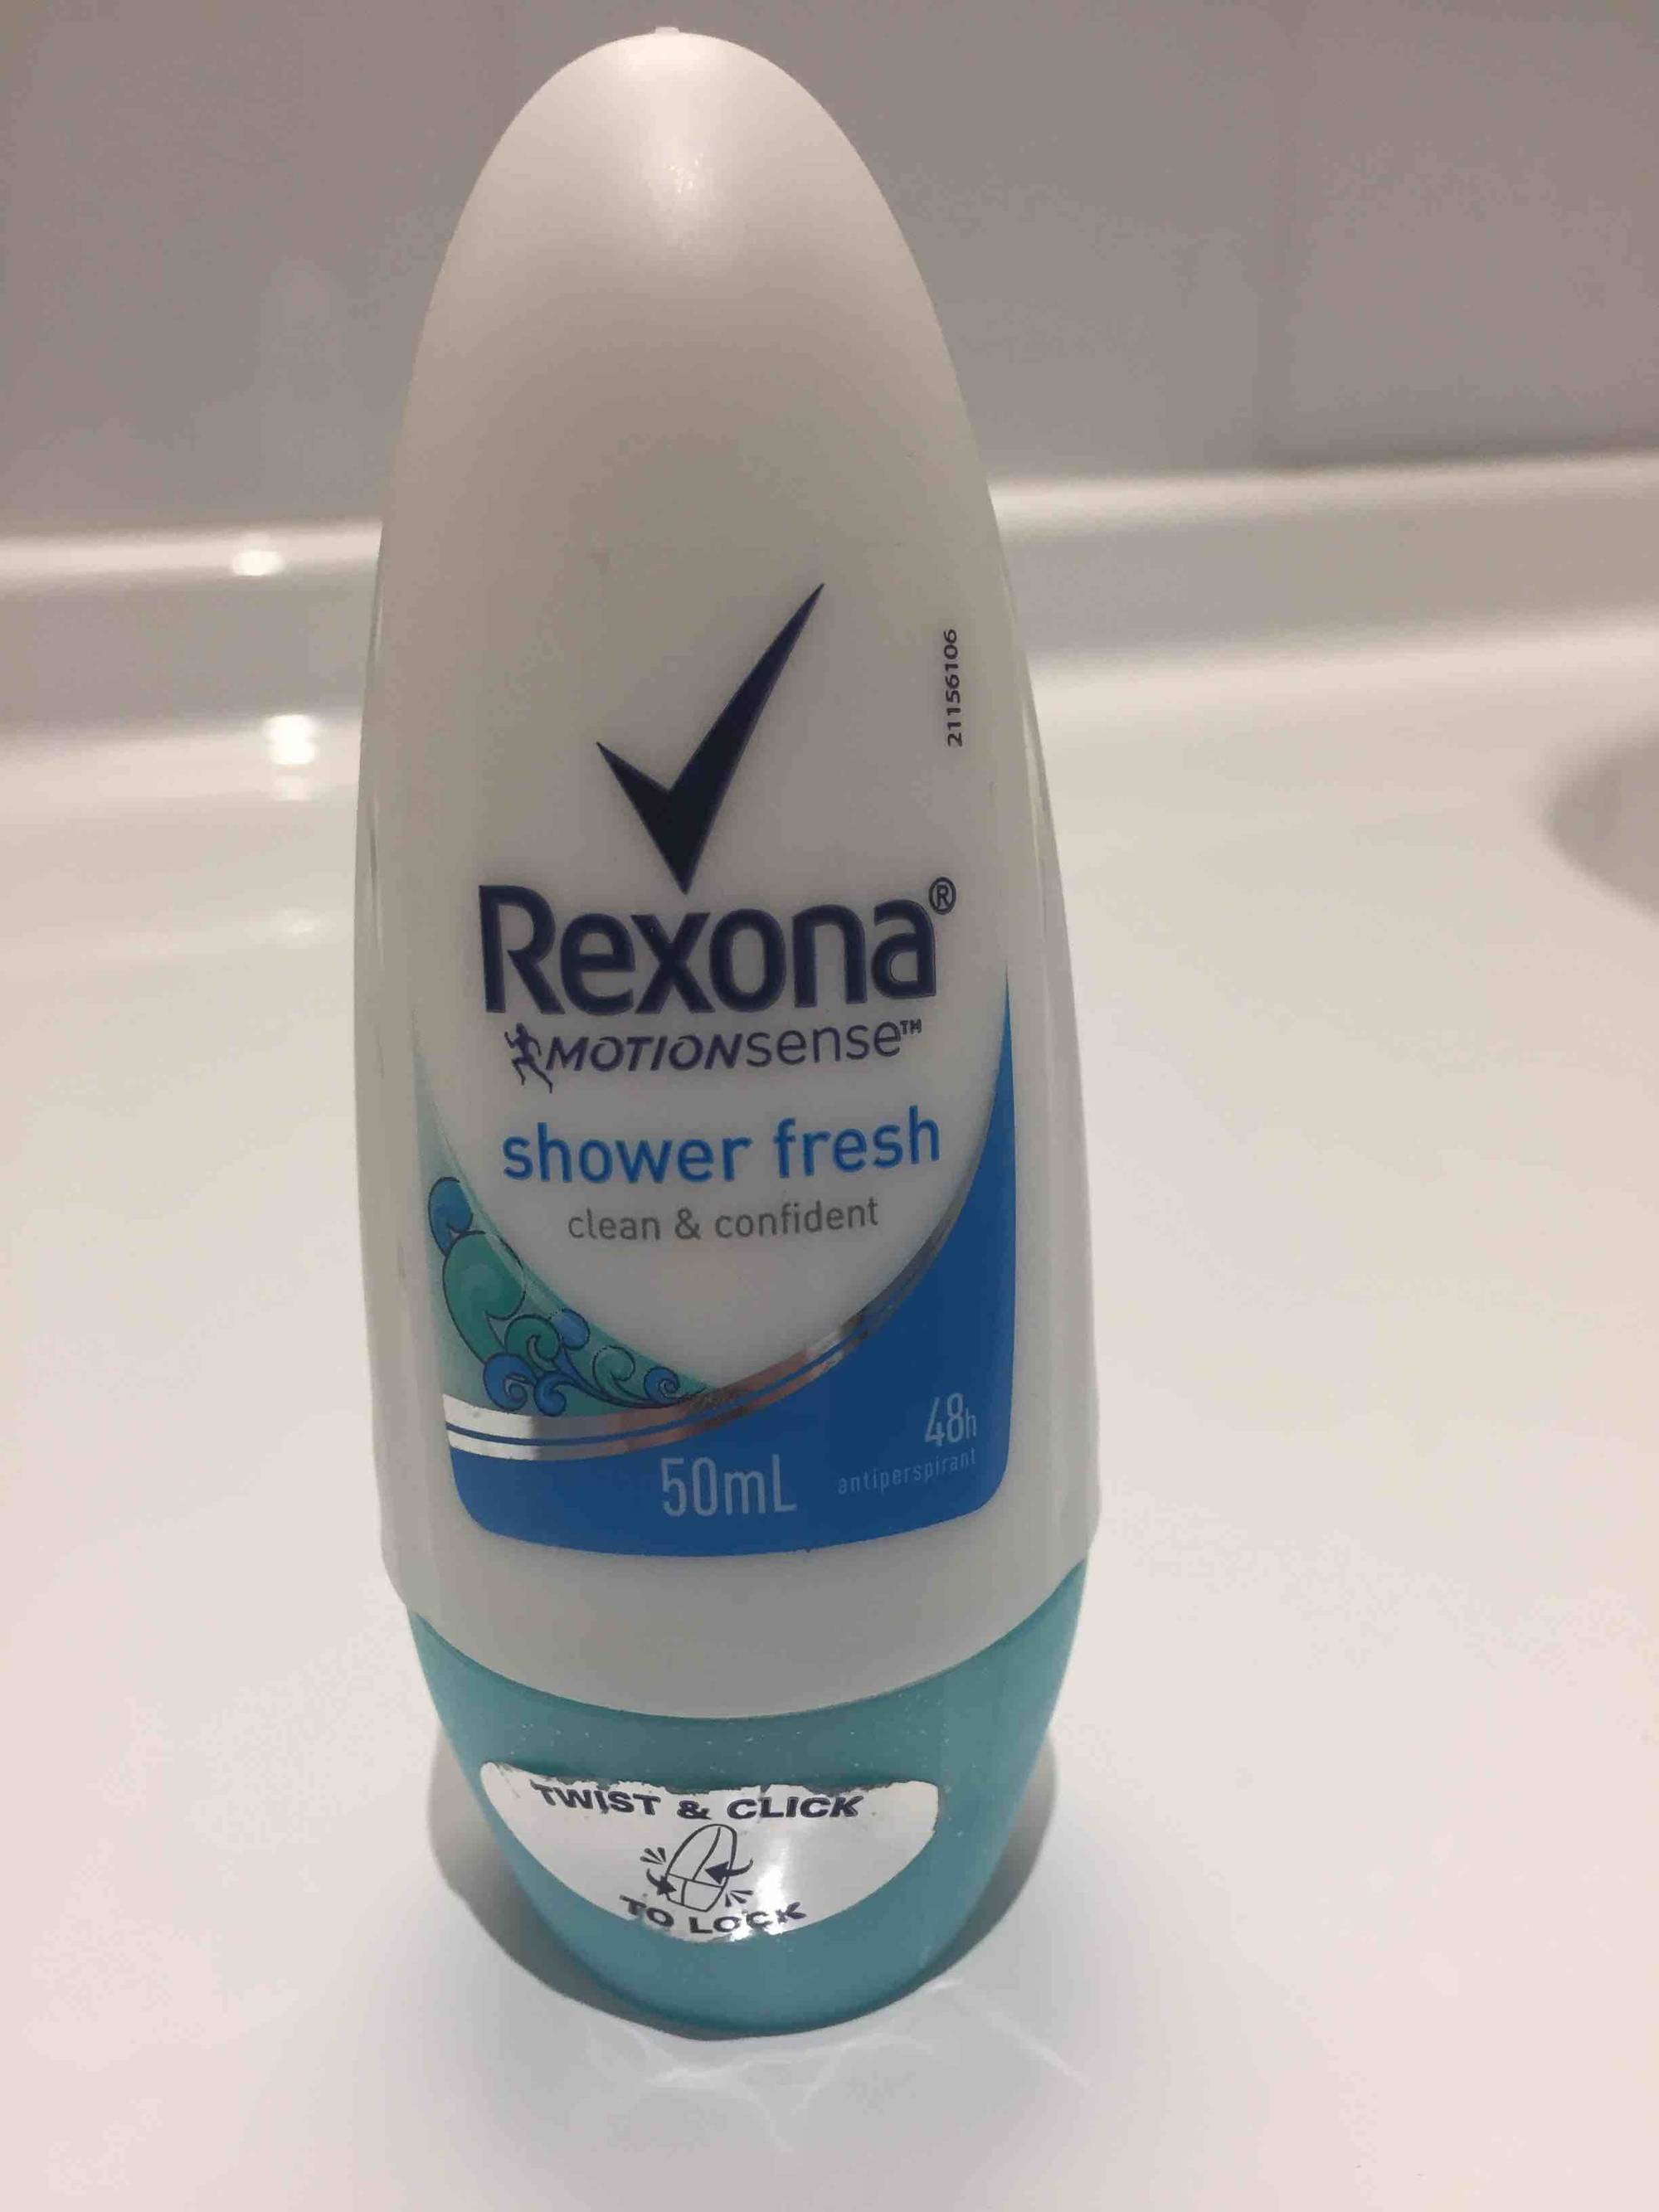 REXONA - Shower fresh - Antiperspirant 48h